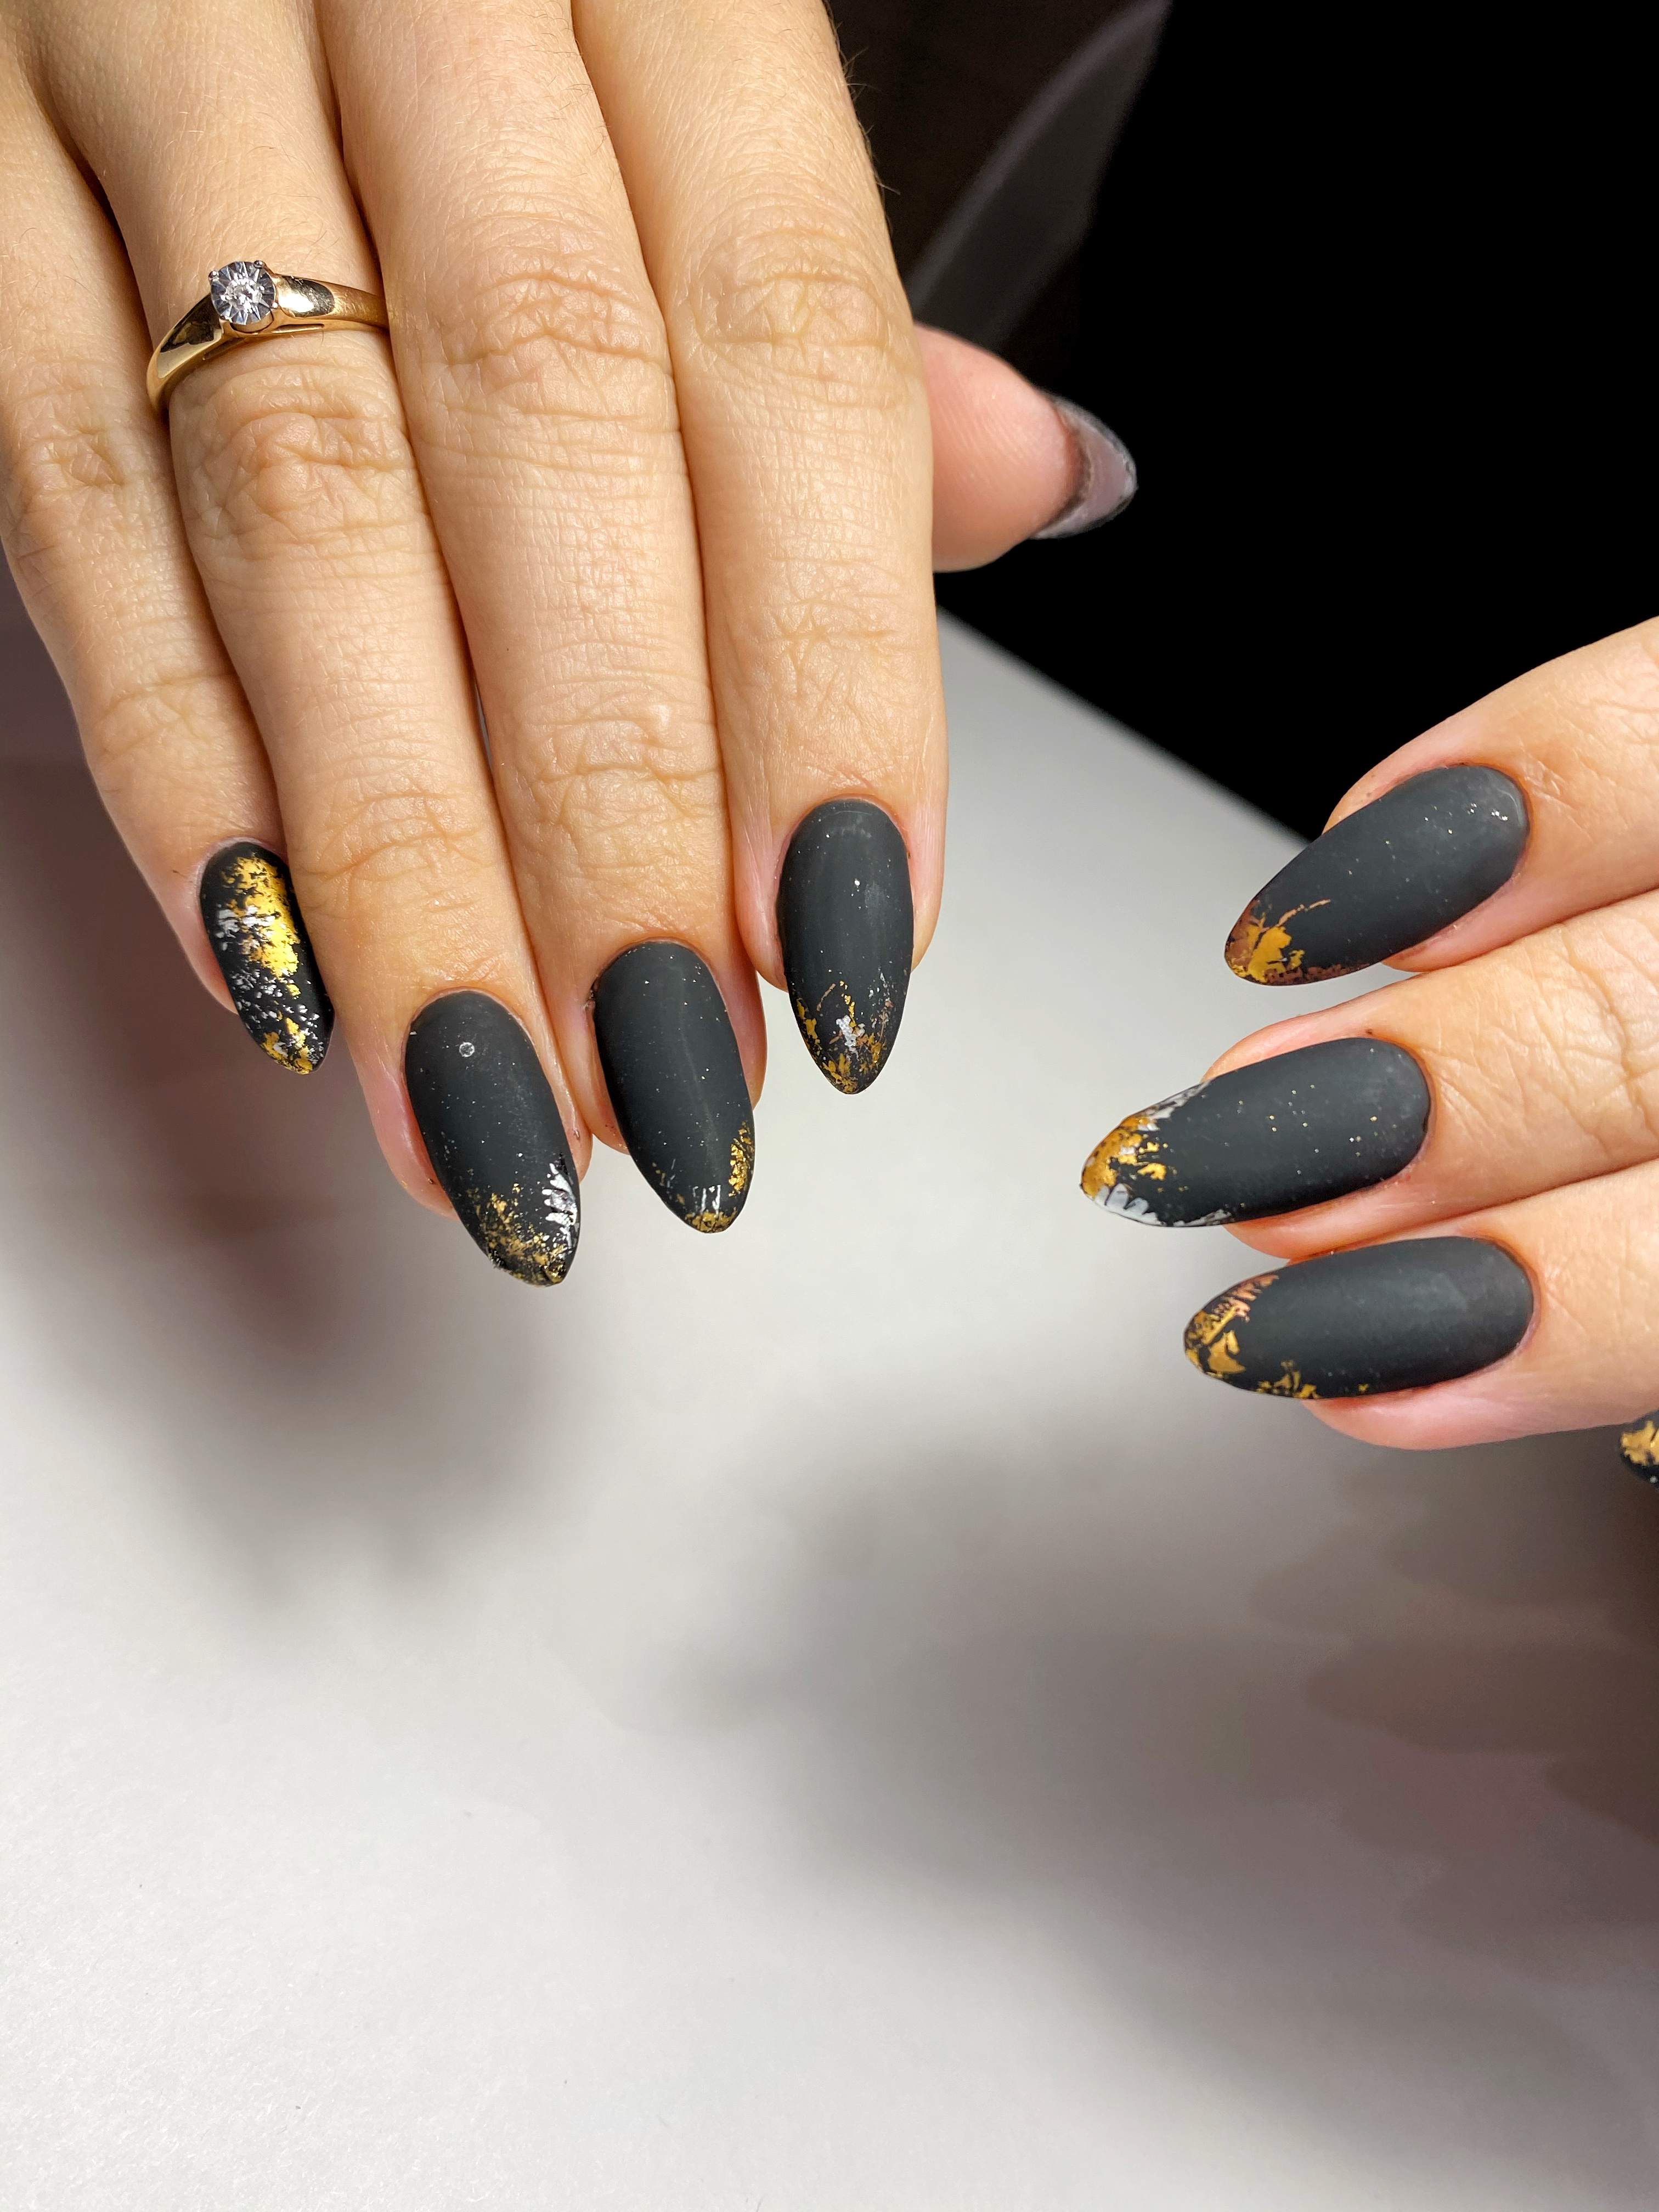 Матовый маникюр с золотой фольгой в черном цвете на длинные ногти.